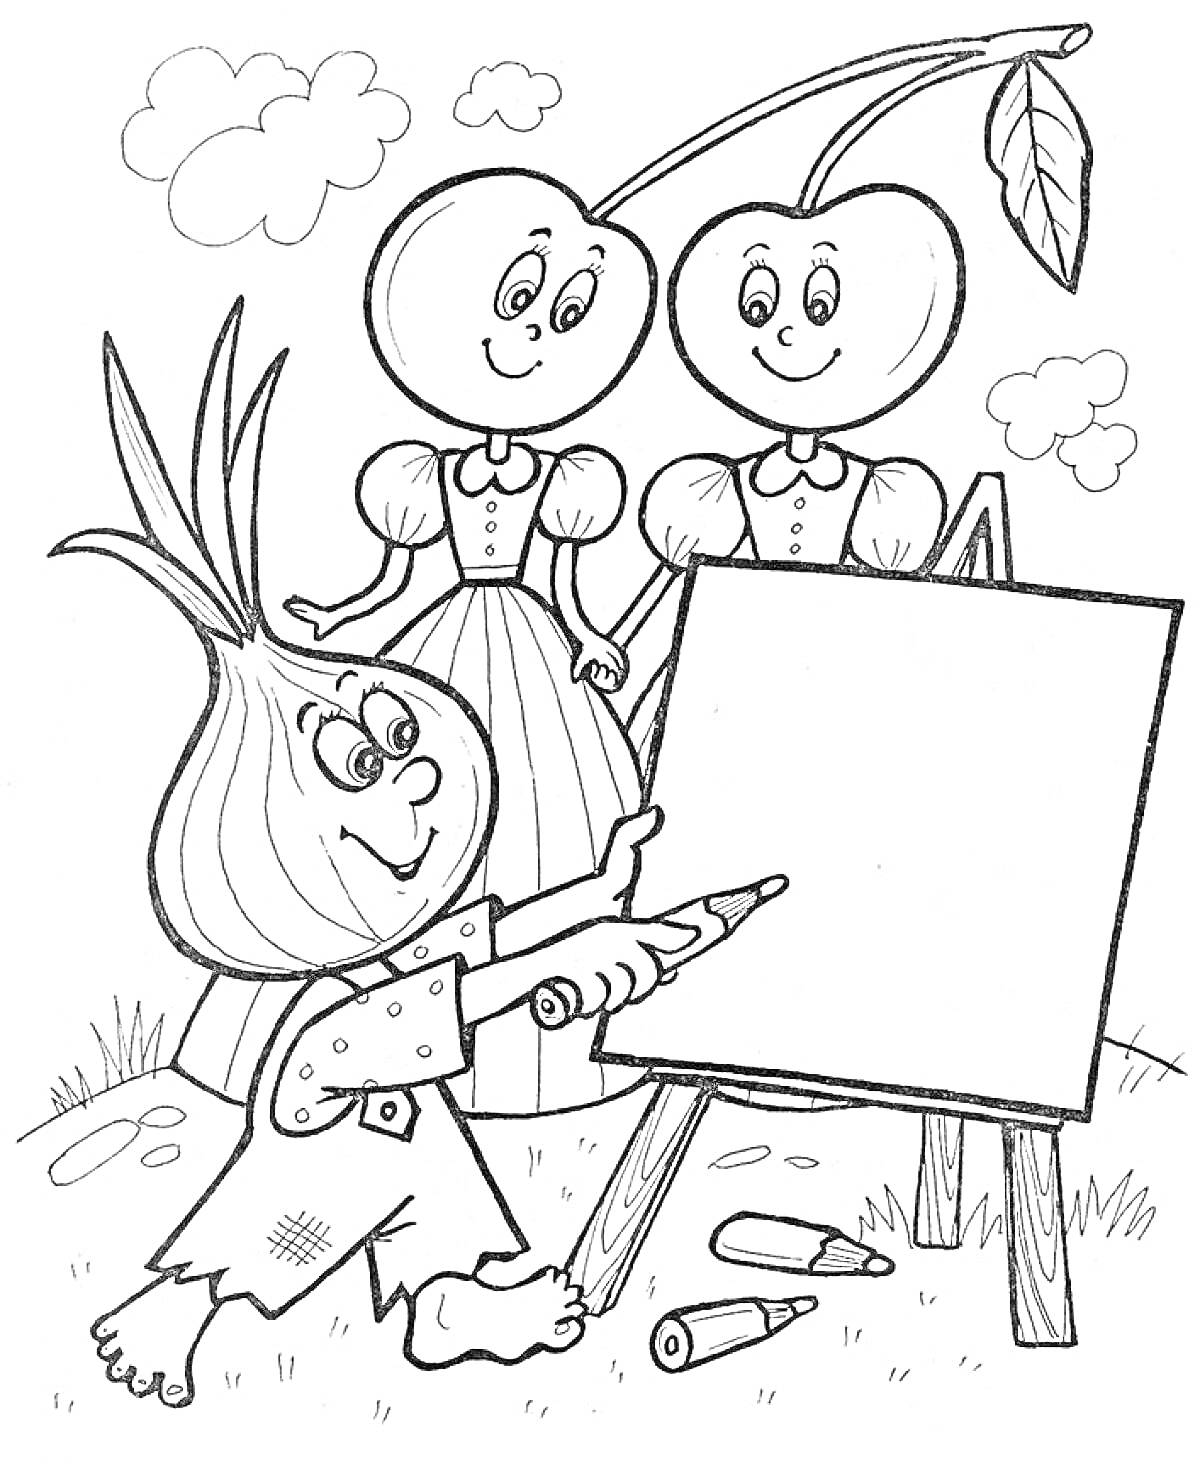 Раскраска Человечек-луковка рисует на мольберте при наблюдении двух персонажей-вишенок.